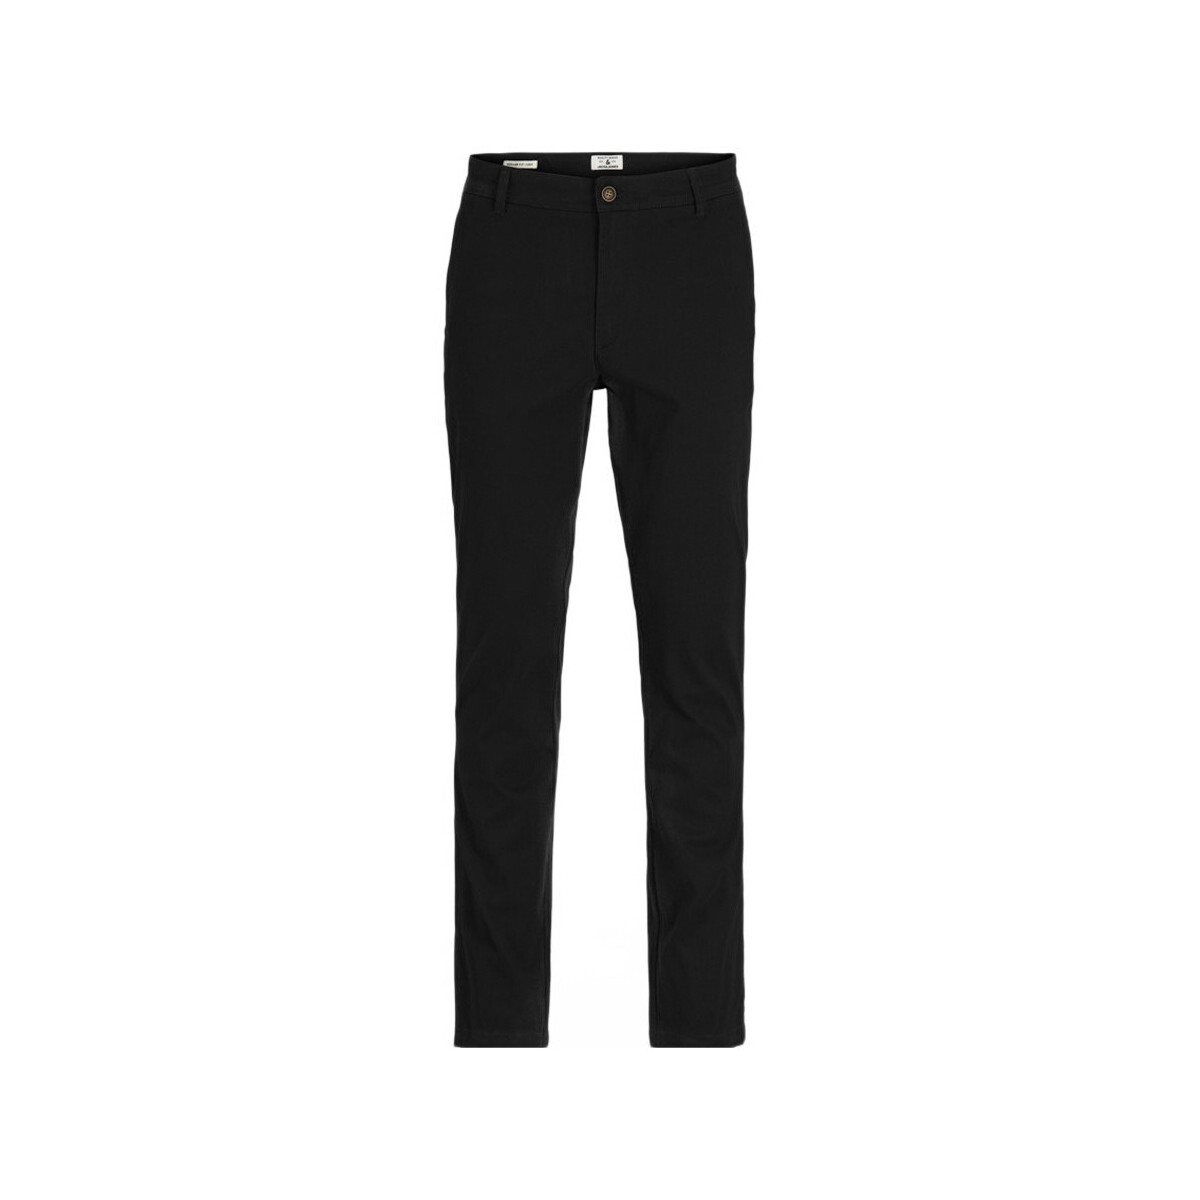 Textiel Heren Broeken / Pantalons Jack & Jones  Zwart